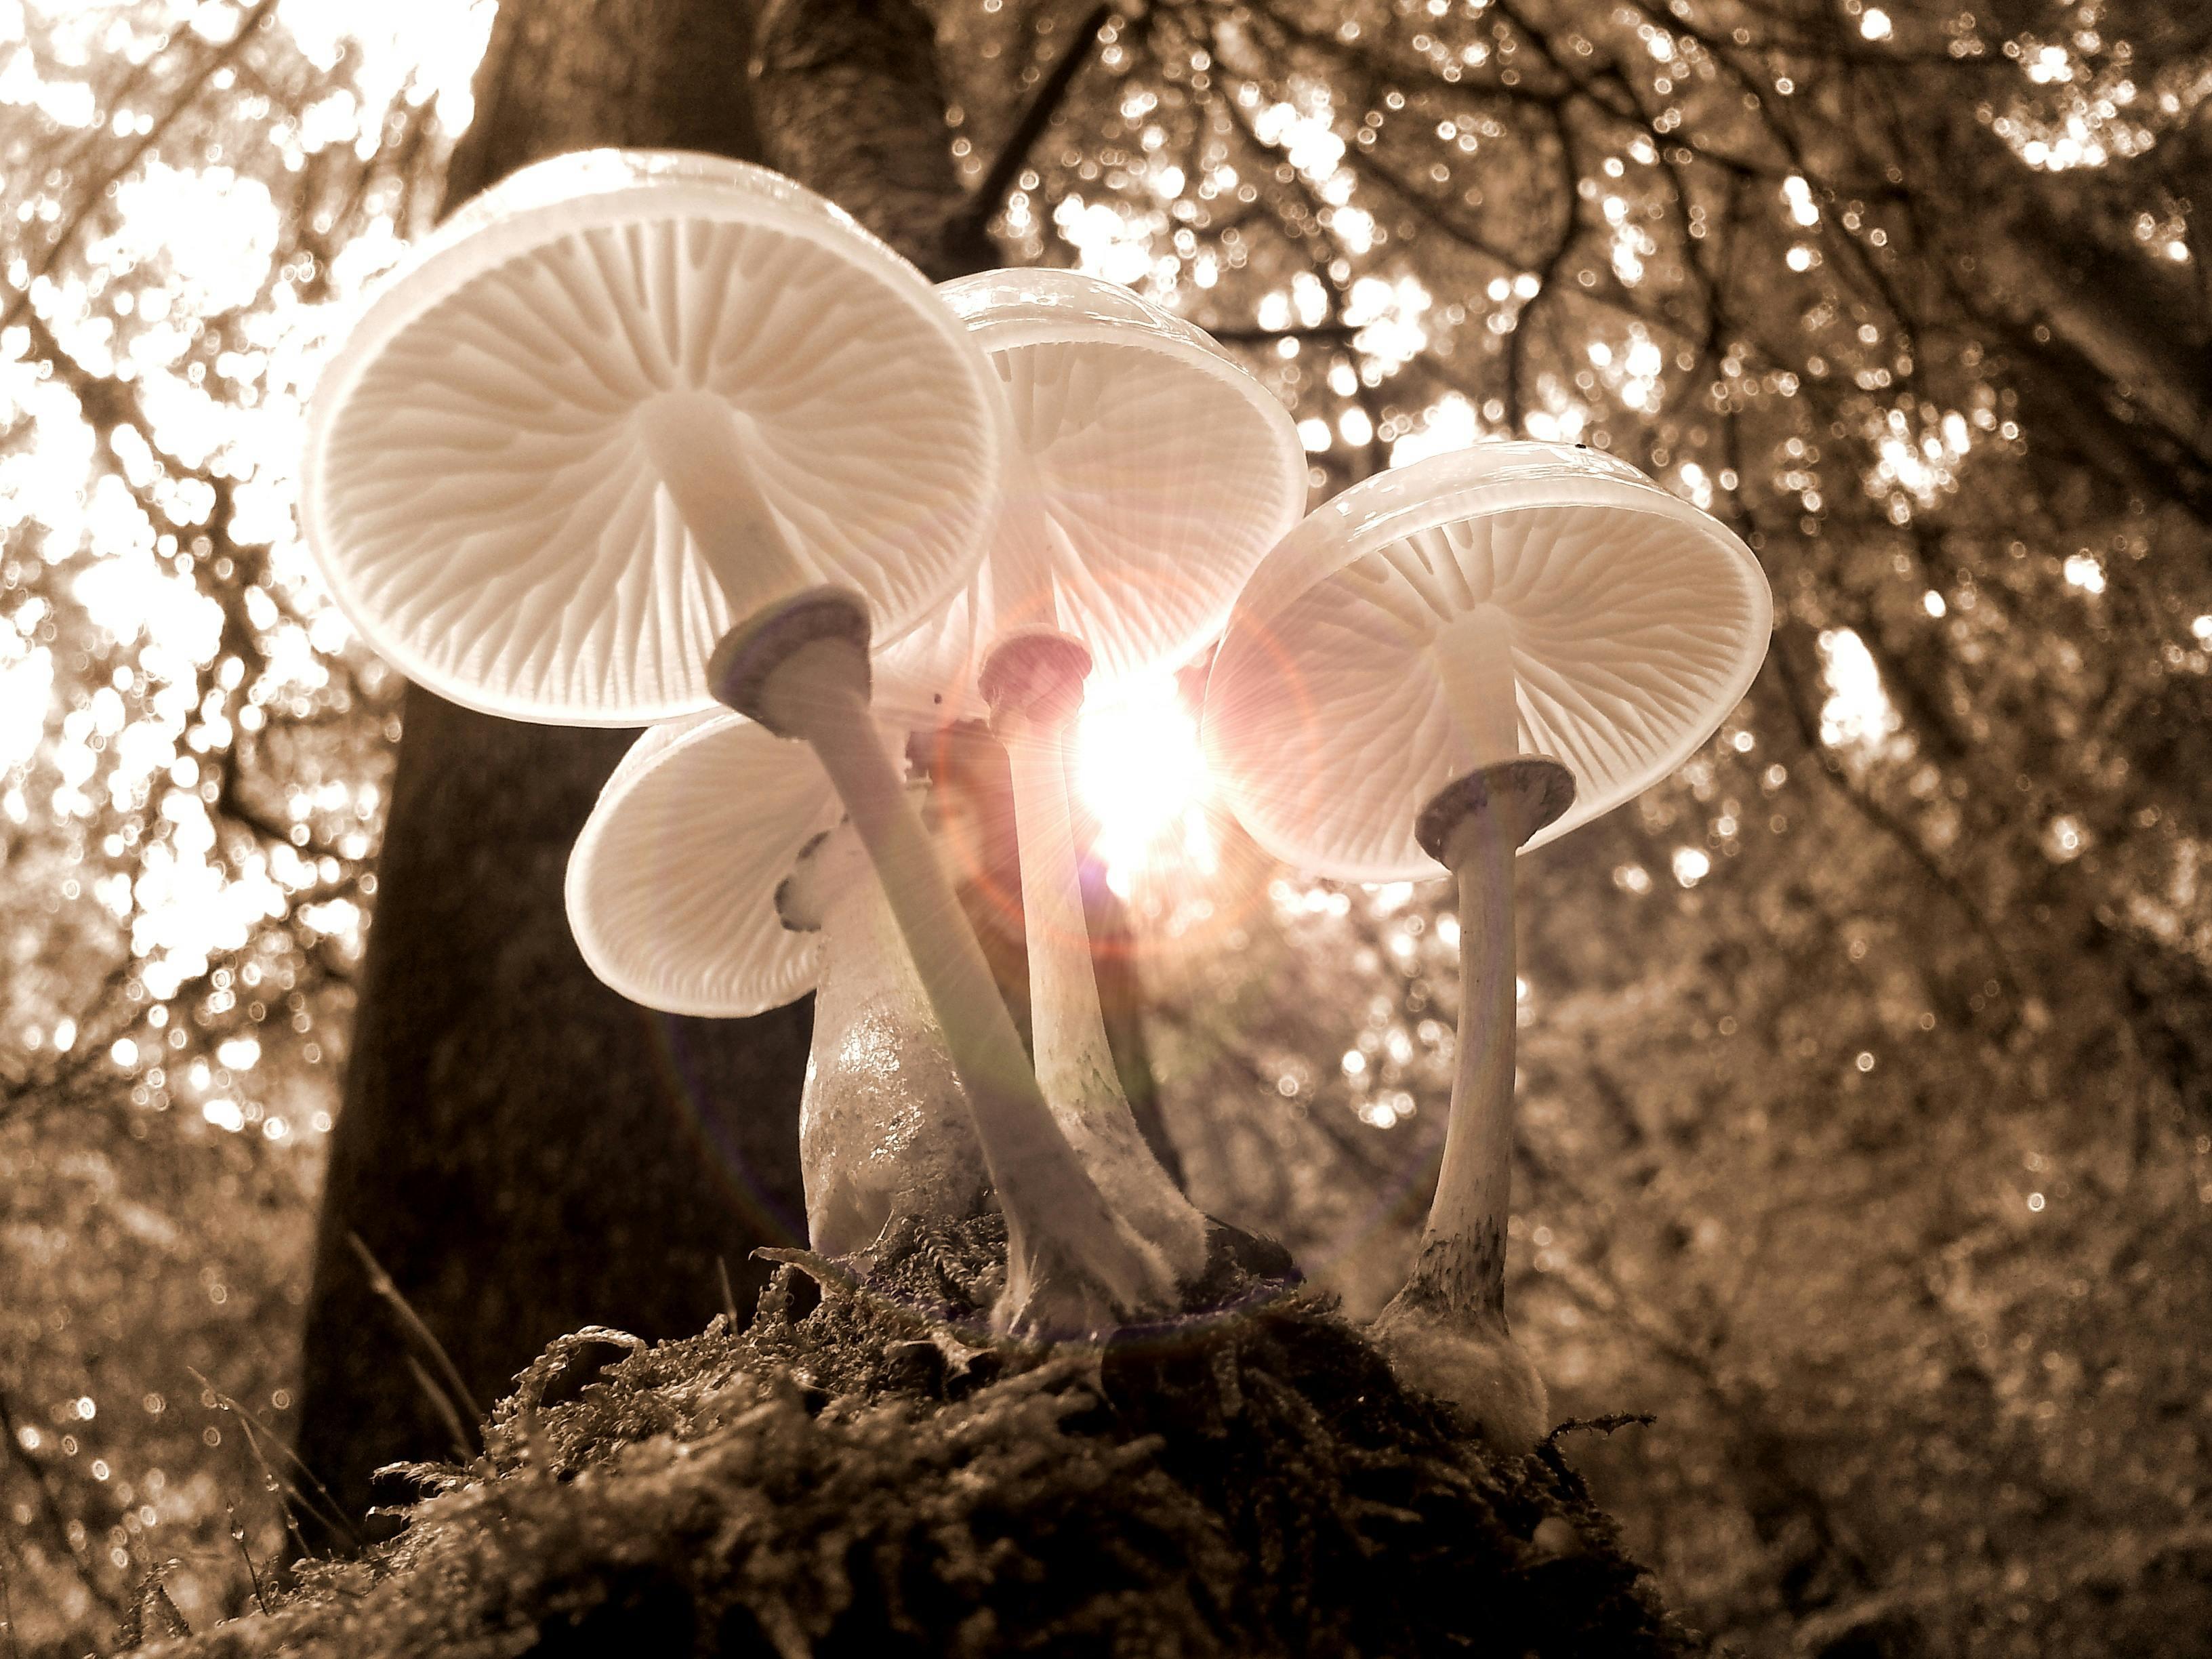 Edible Mushrooms in NC